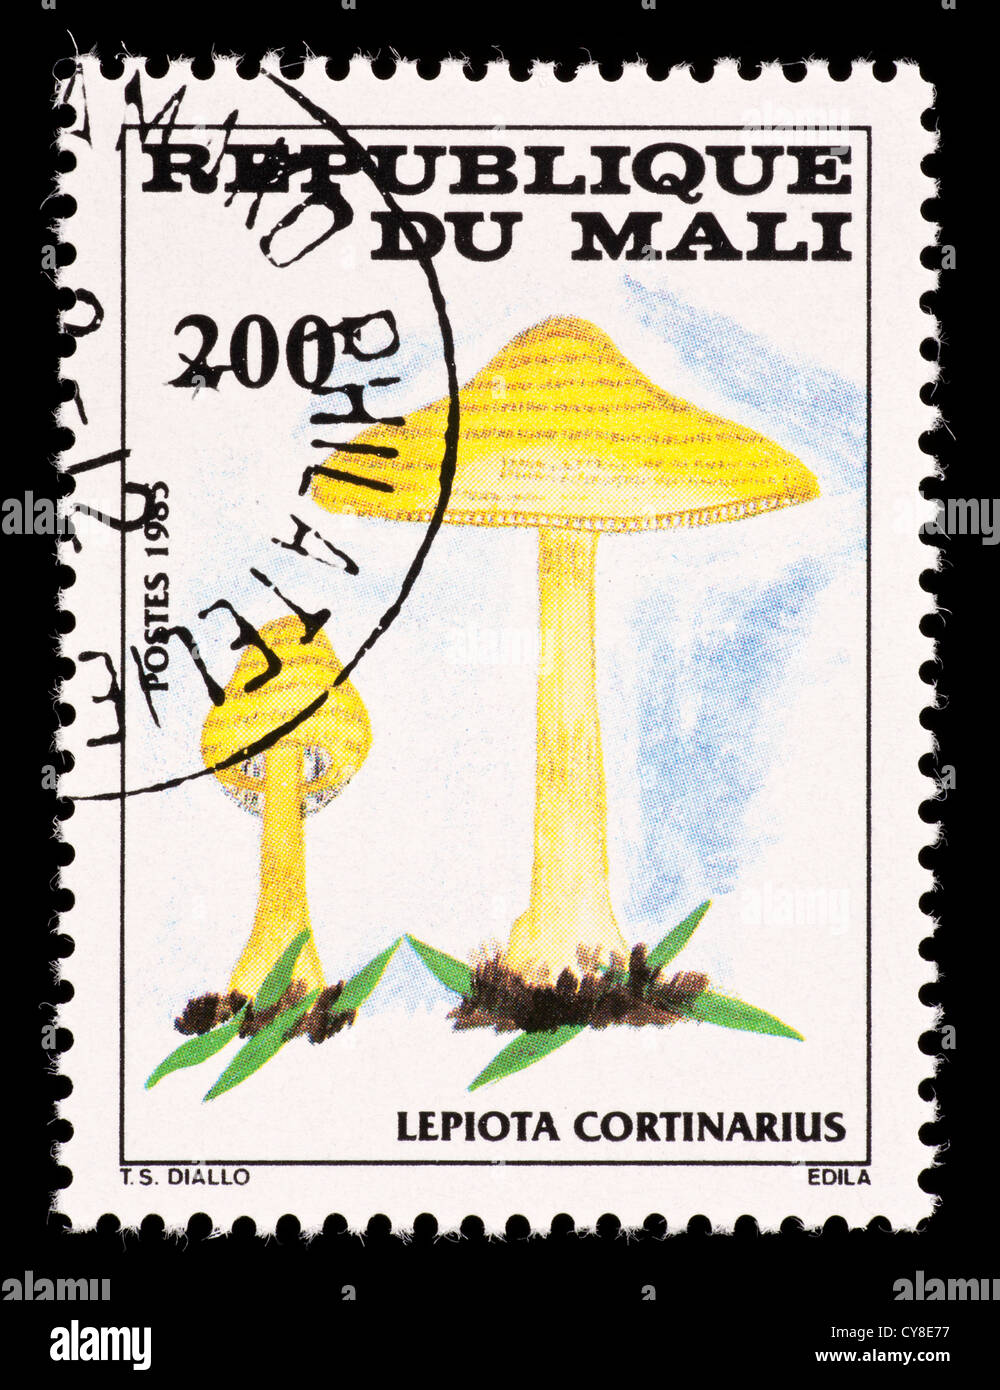 Postage stamp from  Mali depicting mushrooms (Lepiota cortinarius) Stock Photo